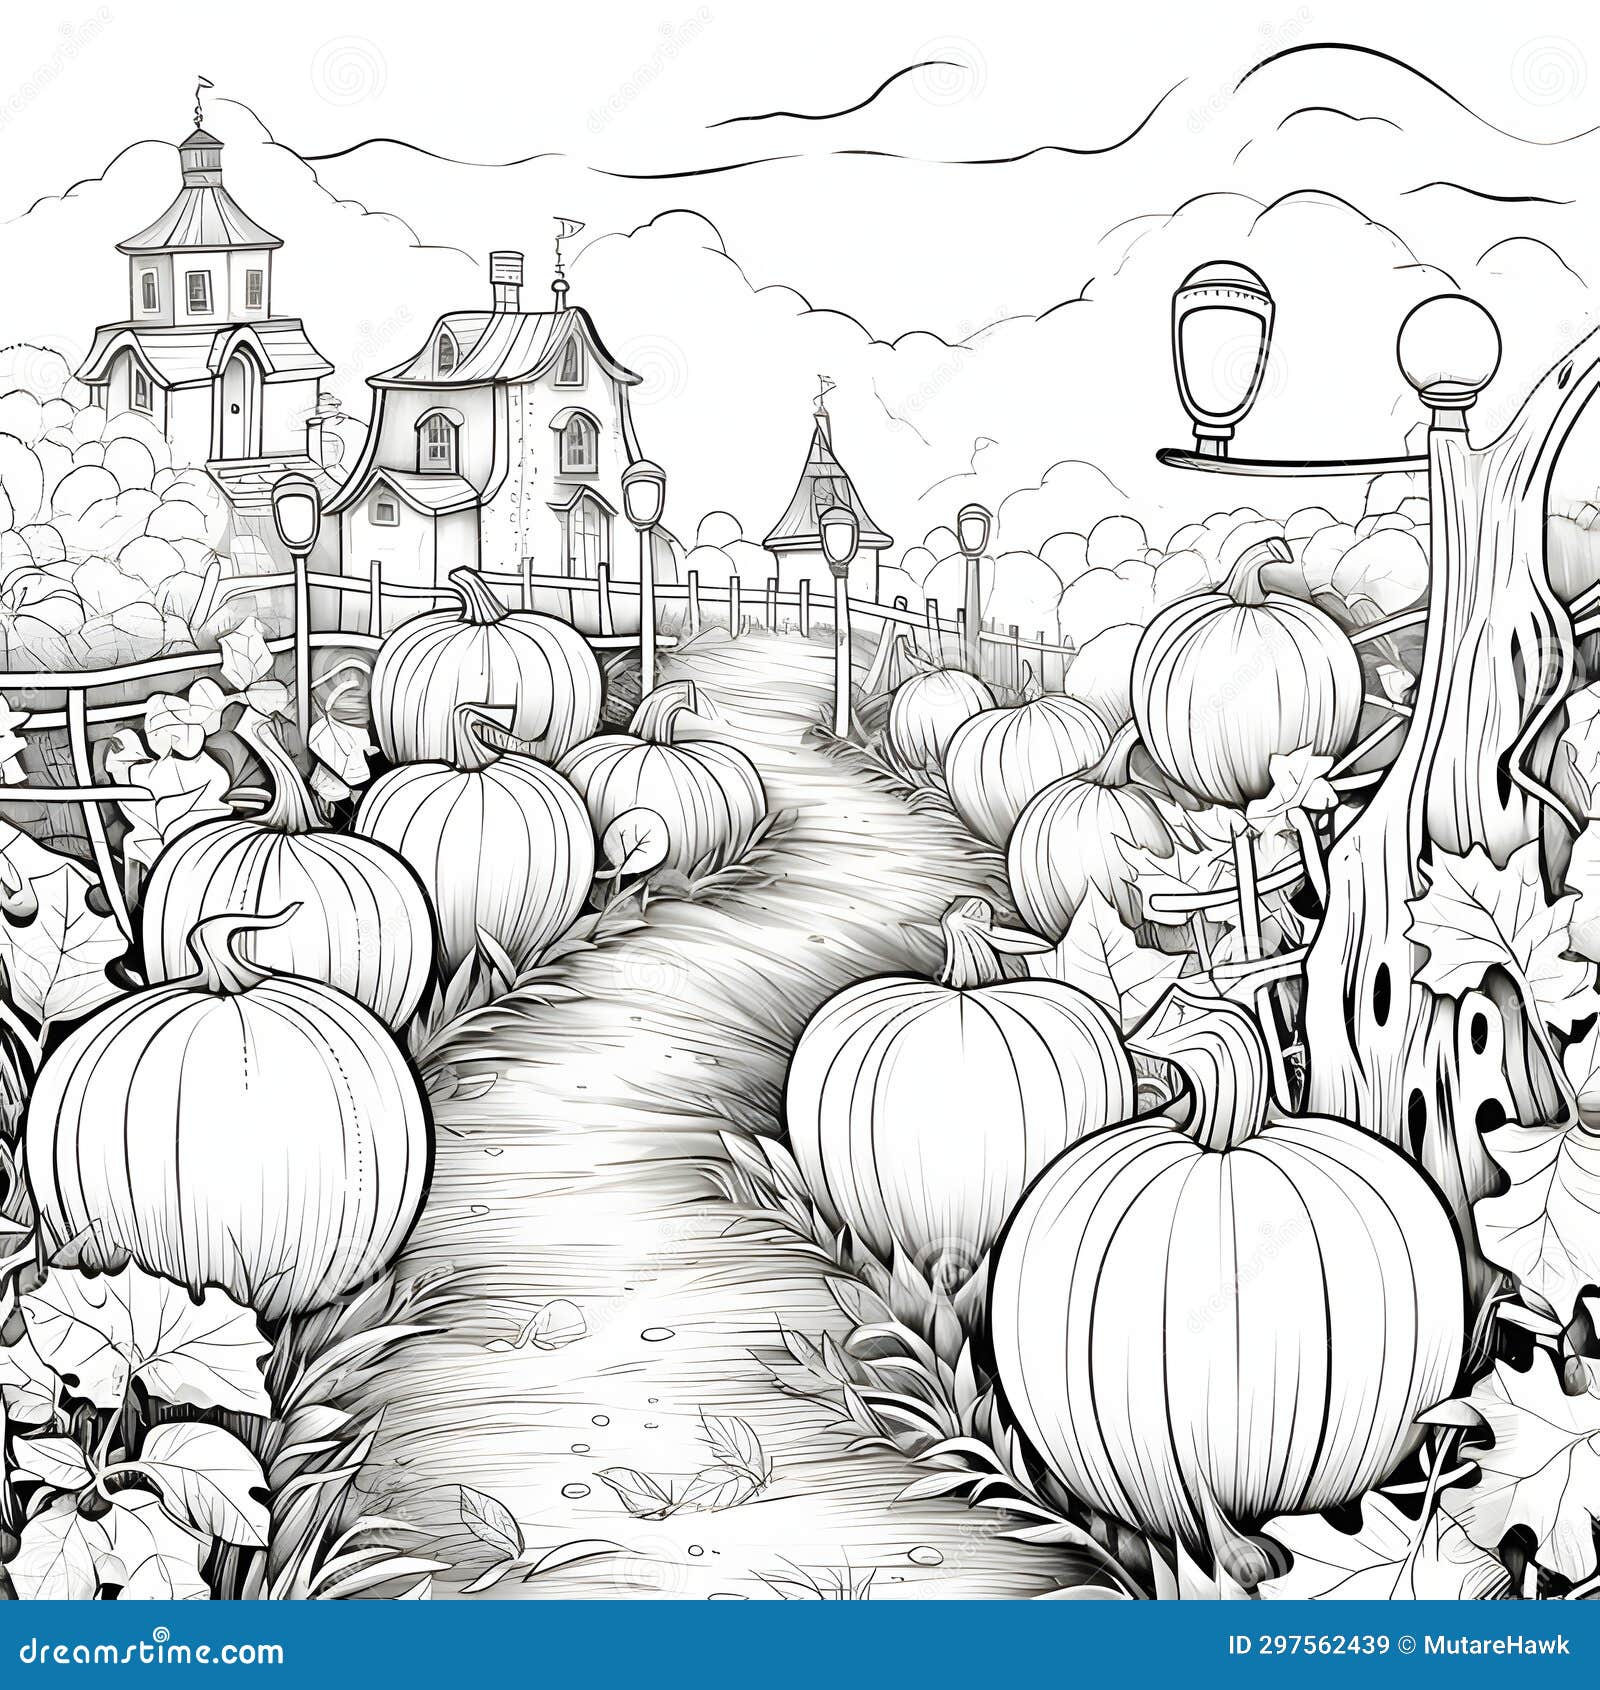 Fall pumpkin patch coloring stock illustrations â fall pumpkin patch coloring stock illustrations vectors clipart